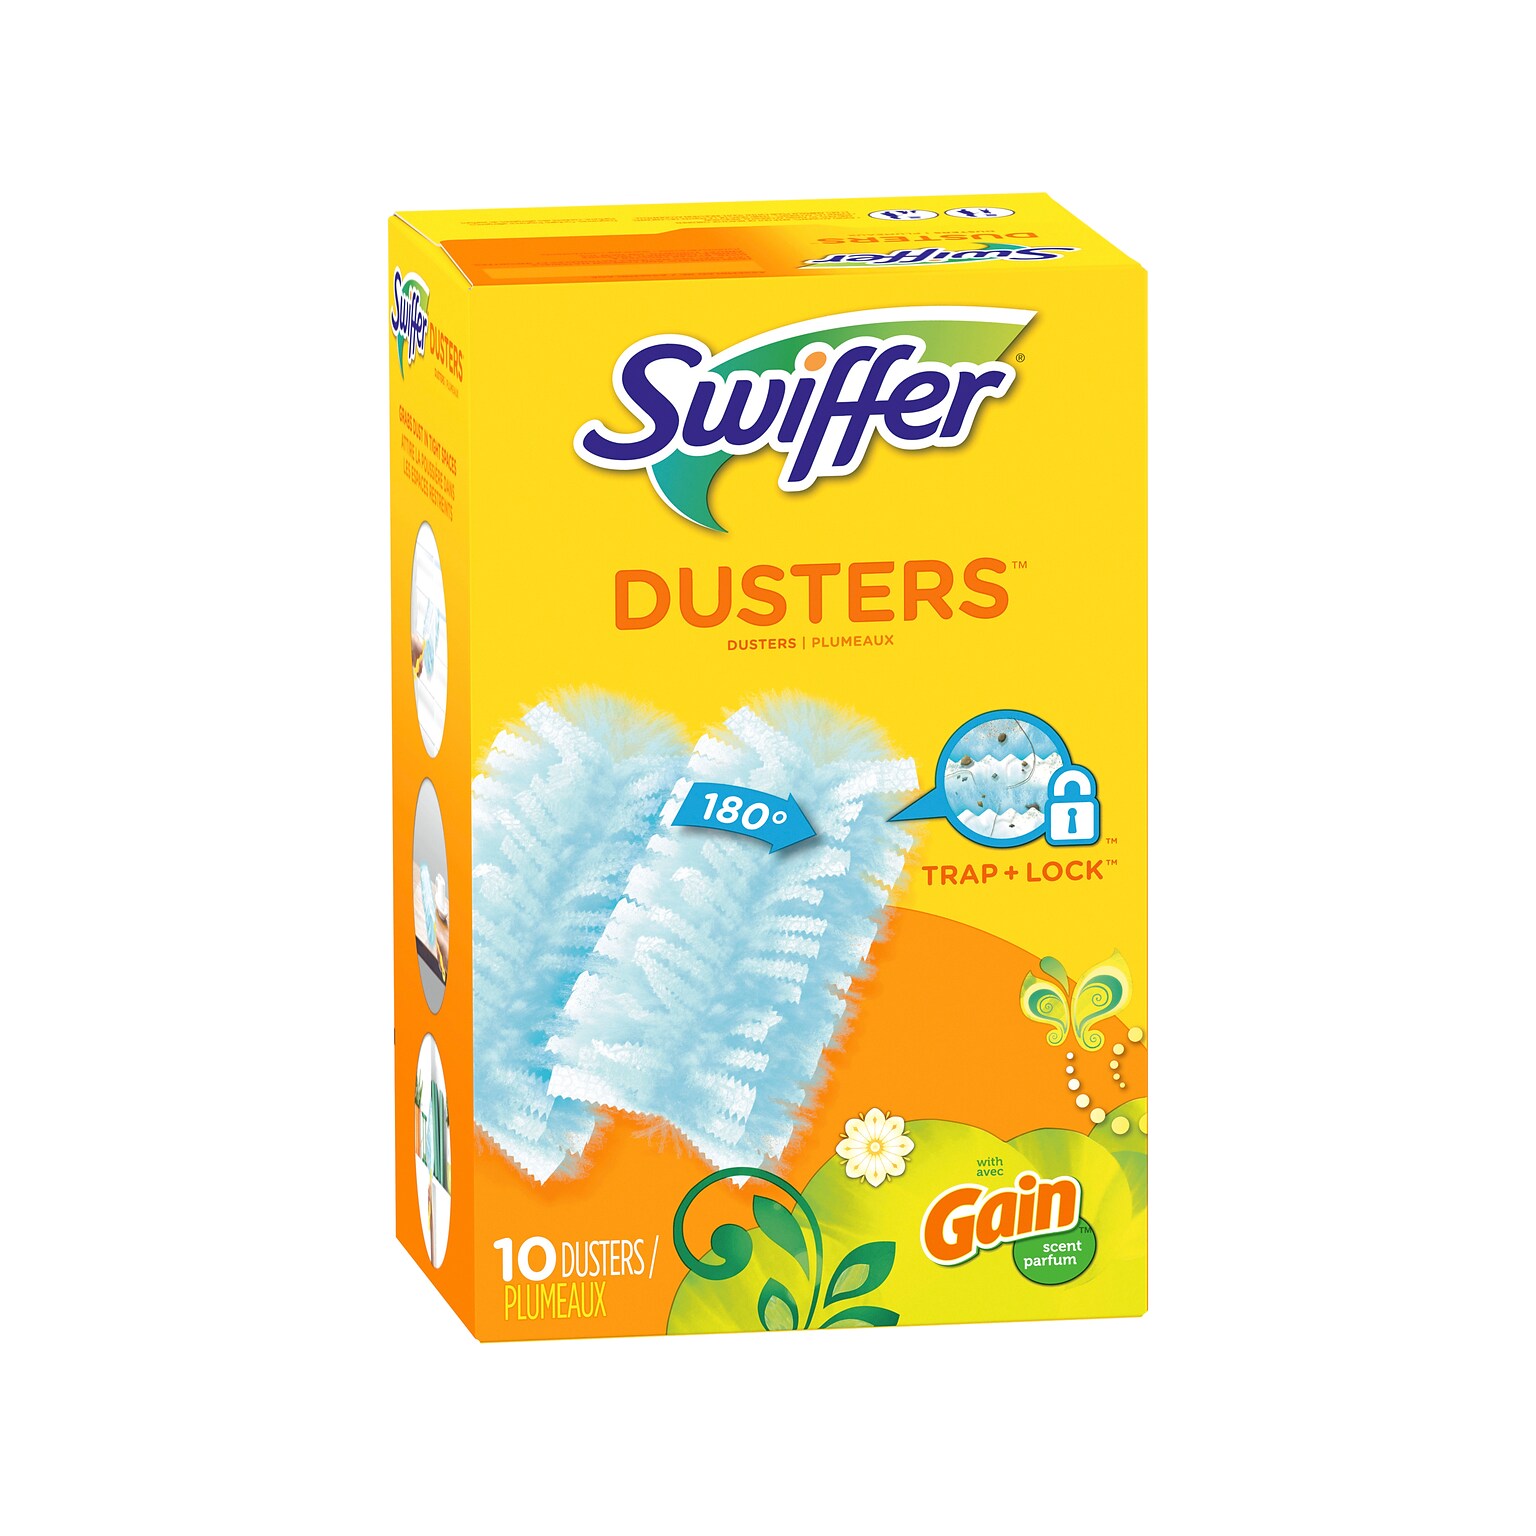 Swiffer Heavy Duty Dusters Refills, Gain, Blue, 10/Pack (08306)